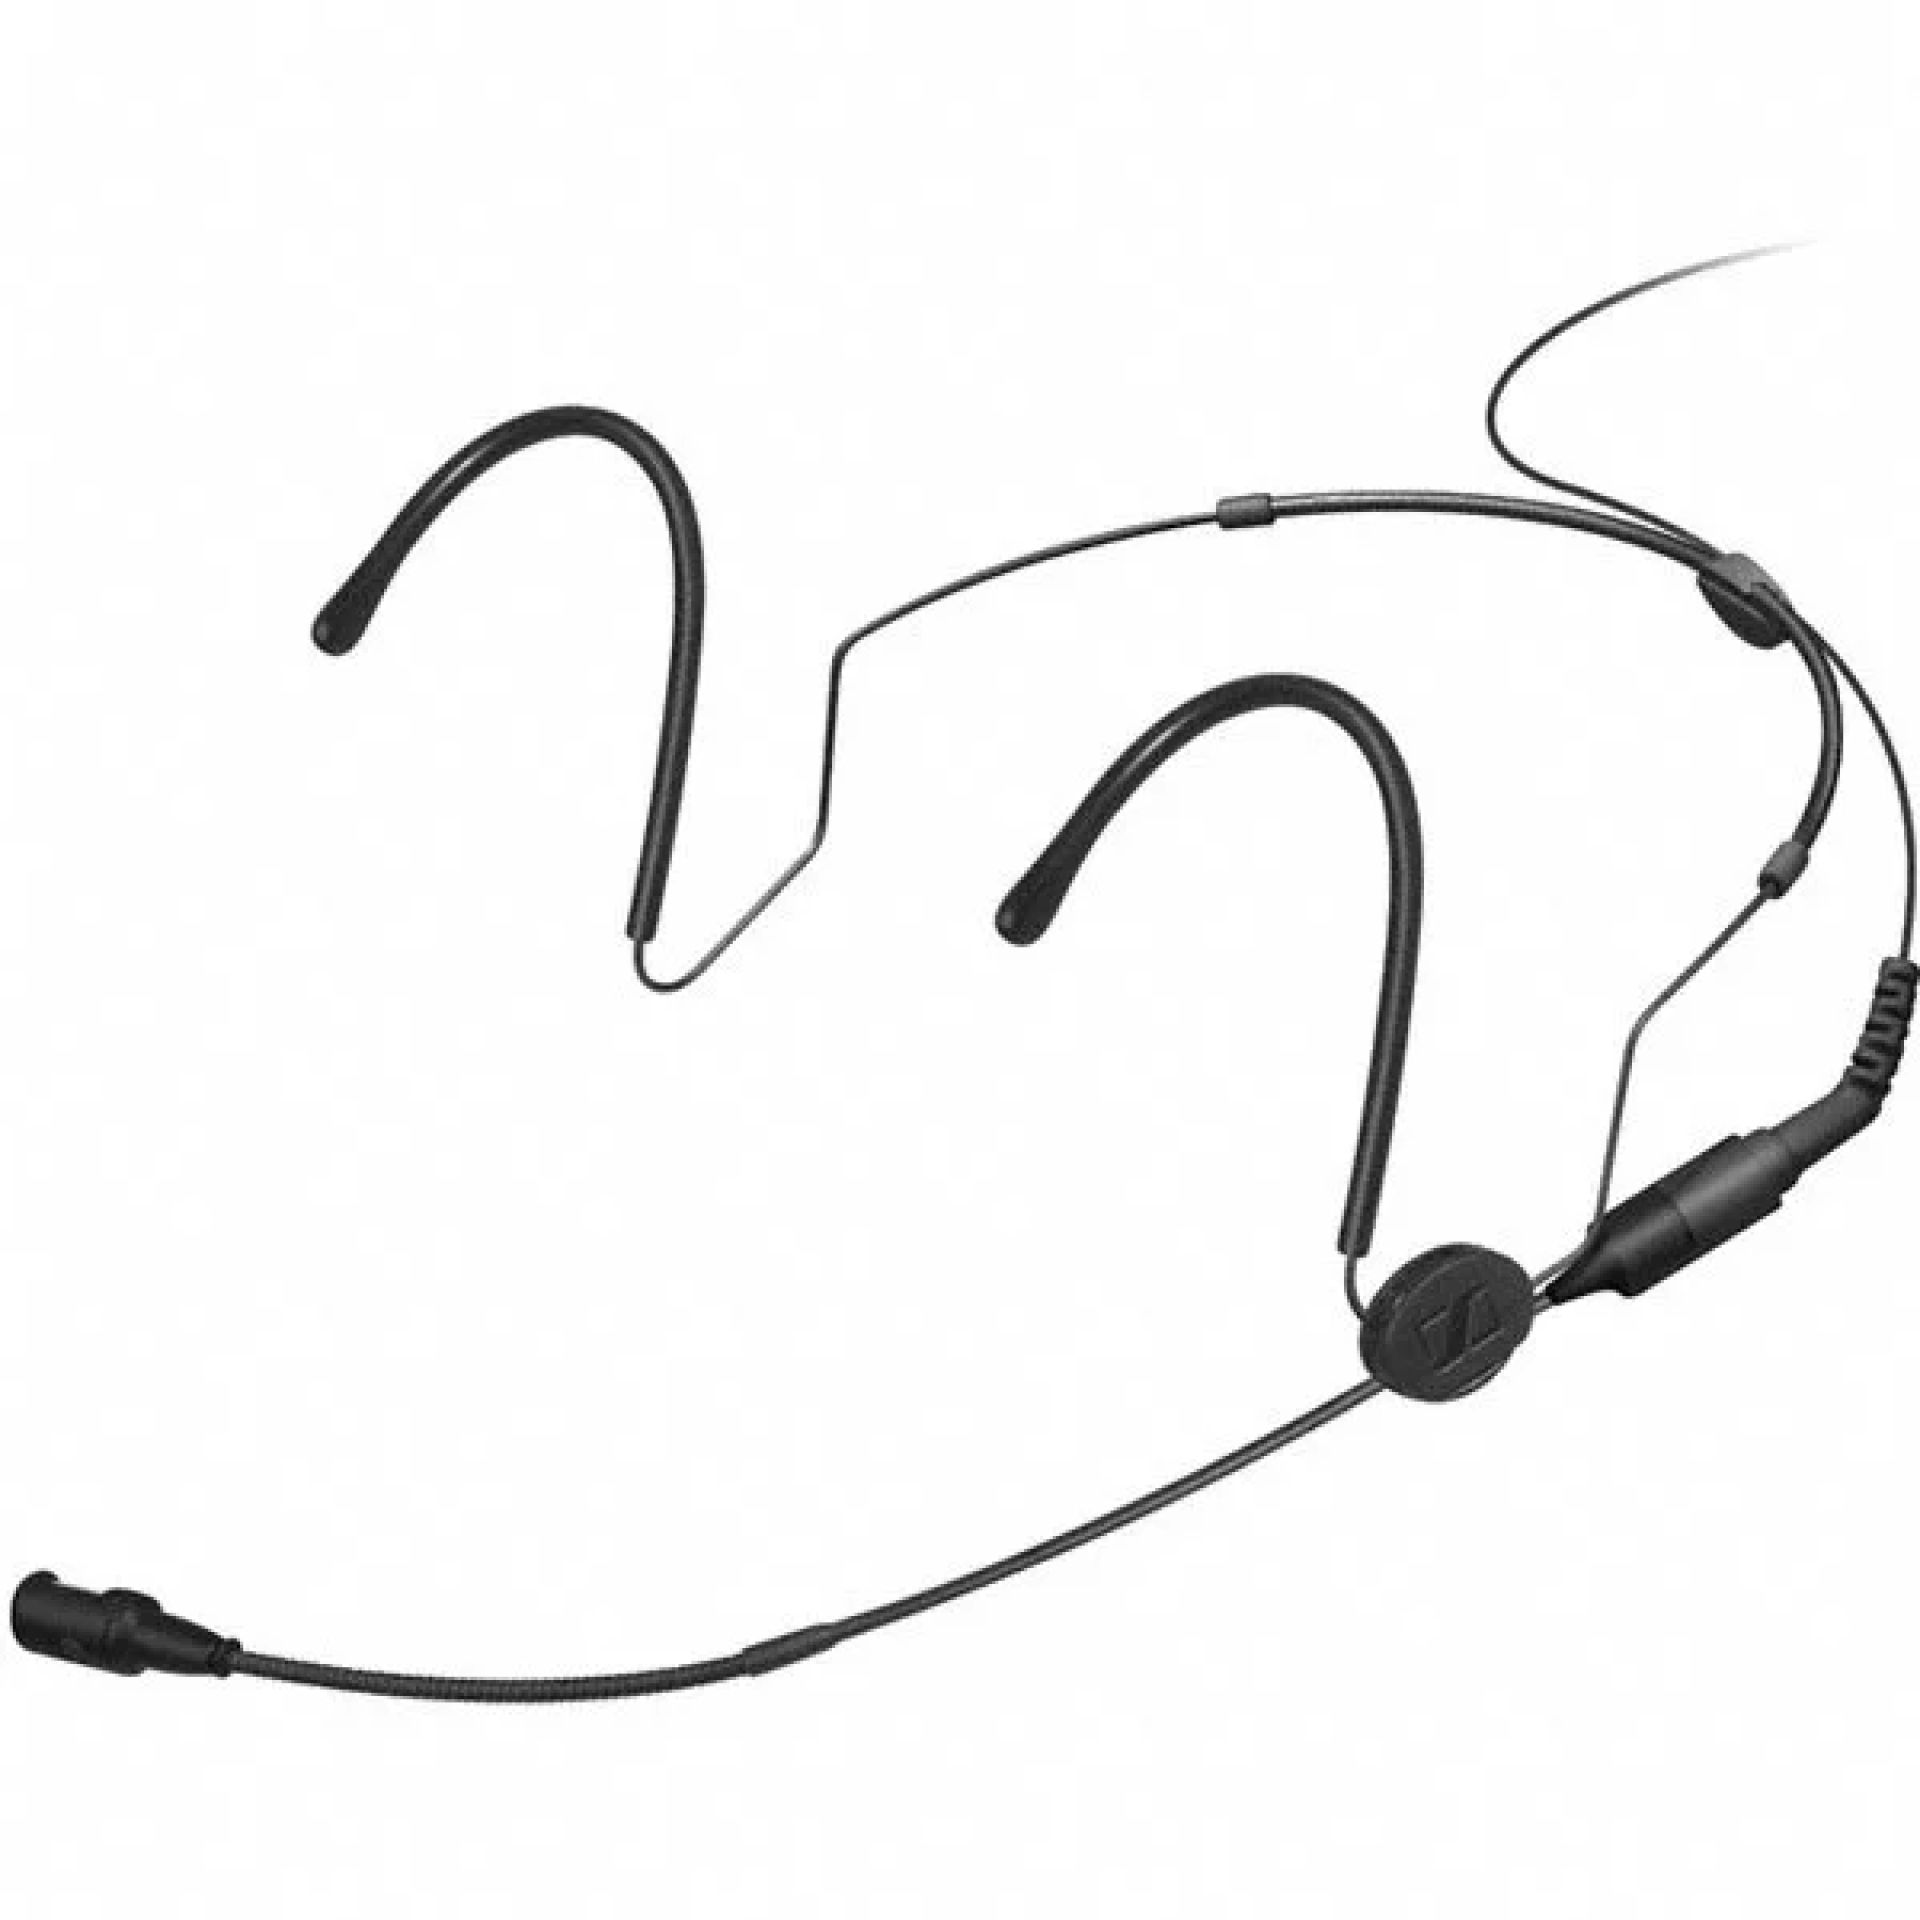 Sennheiser HSP 4 Headset